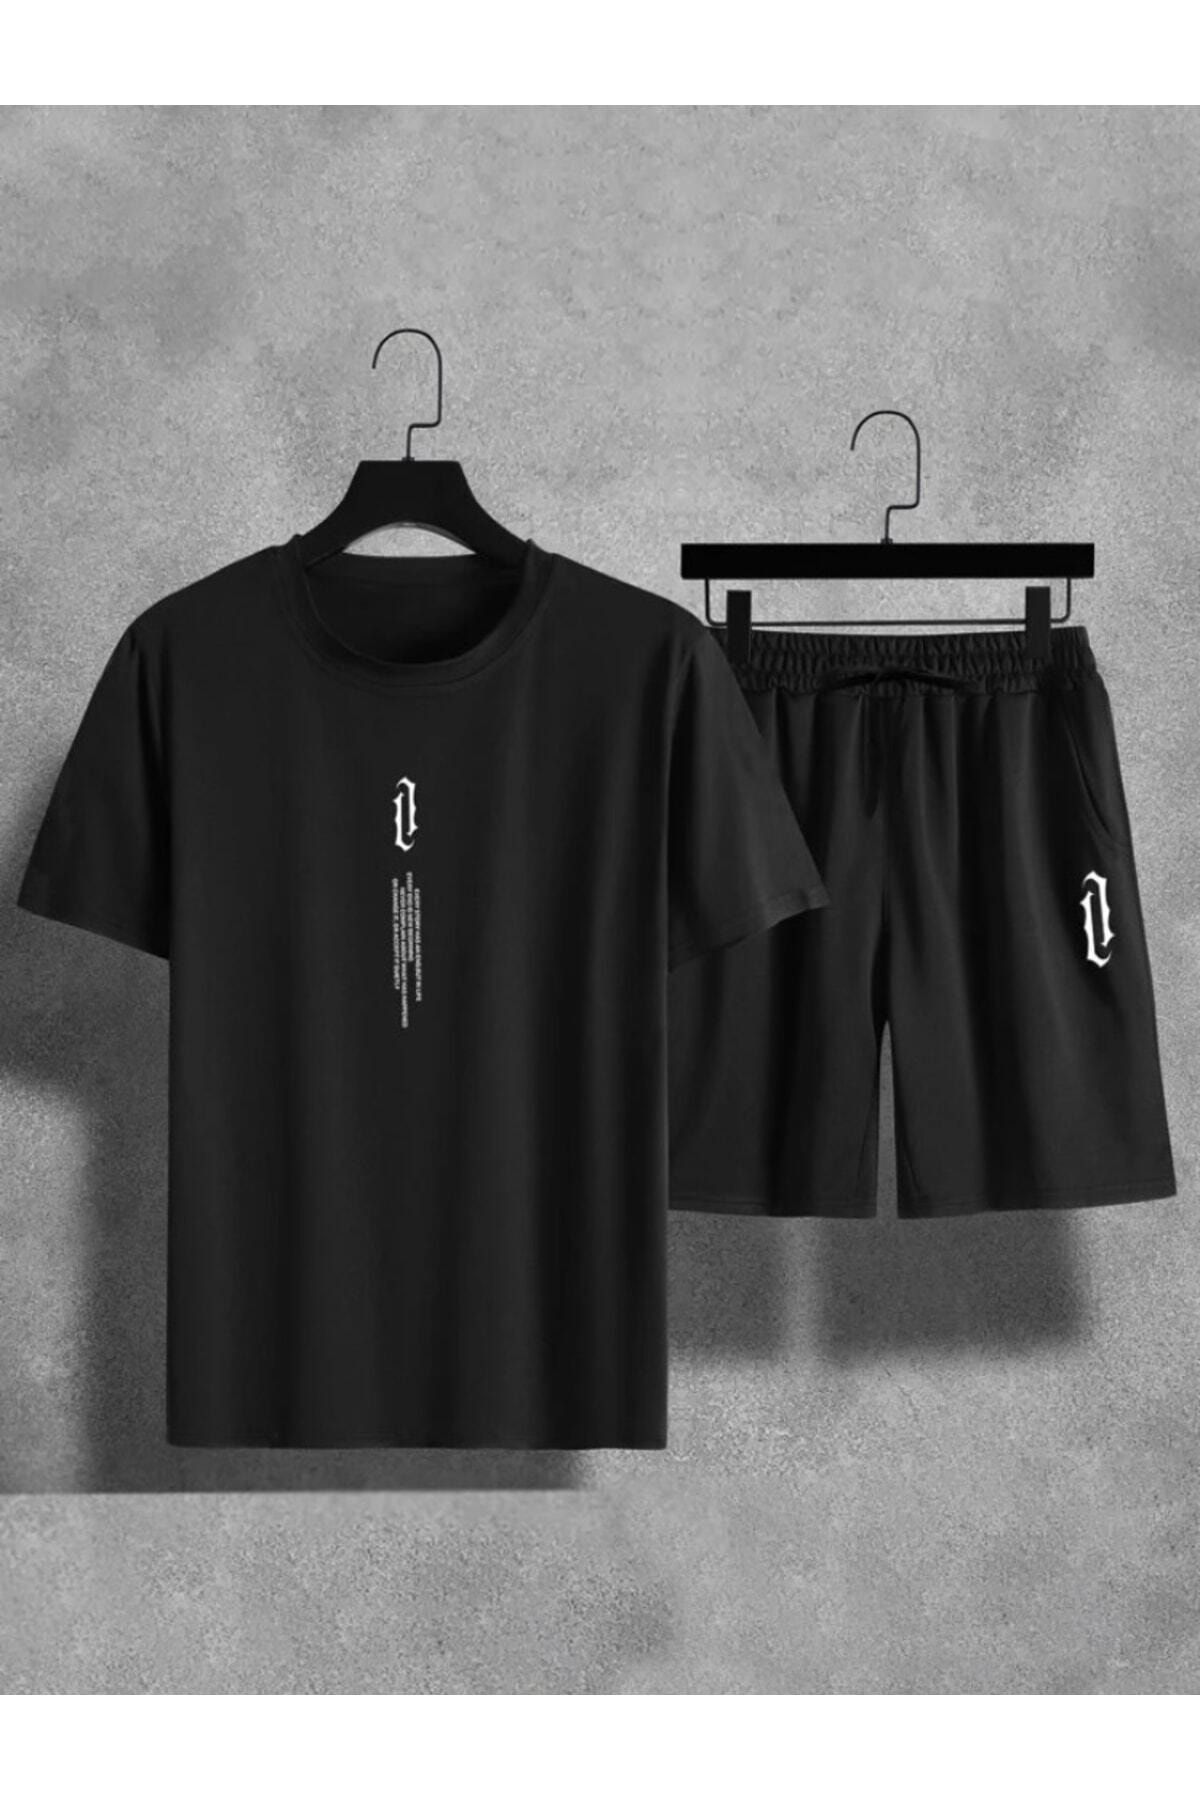 SANTAMİNA Unisex Siyah Göğüs Dikey Baskılı Alt Üst Şortşort T-shirt Takım